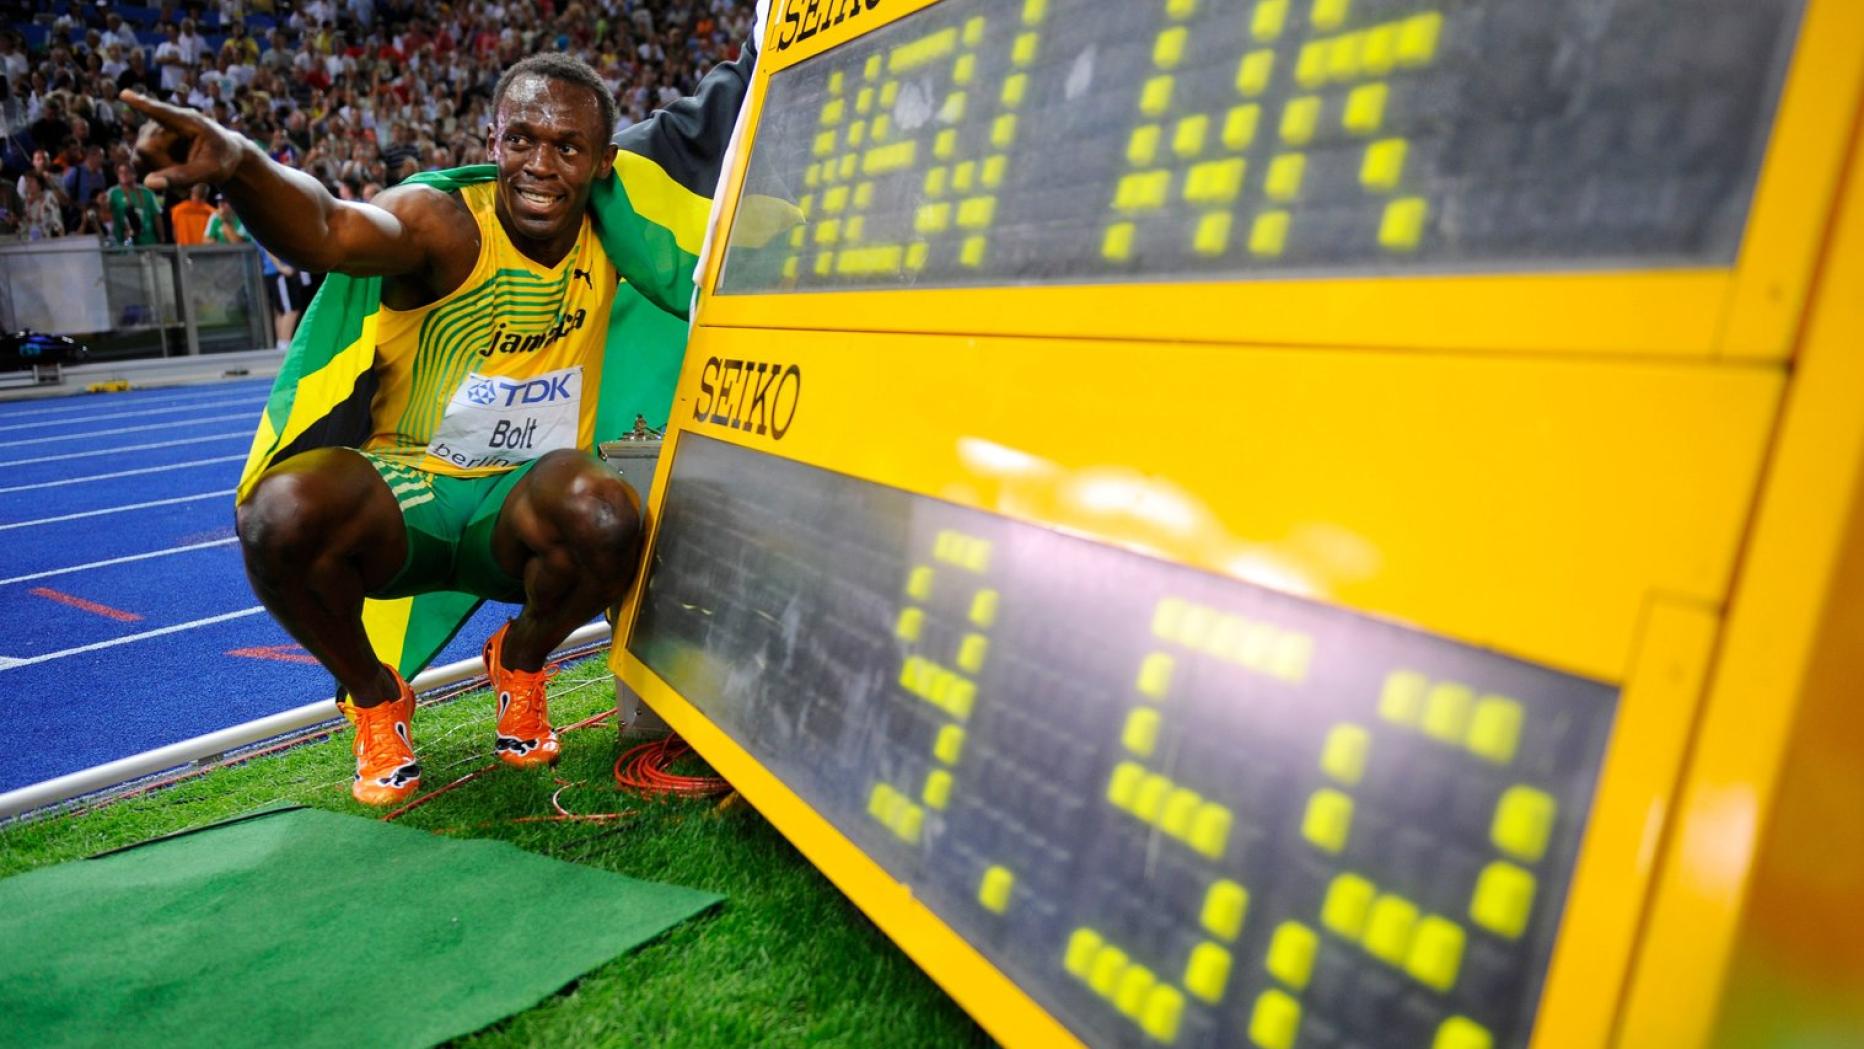 Usain Bolt 9.58. Usain Bolt record 100m. Усейн болт плачет.